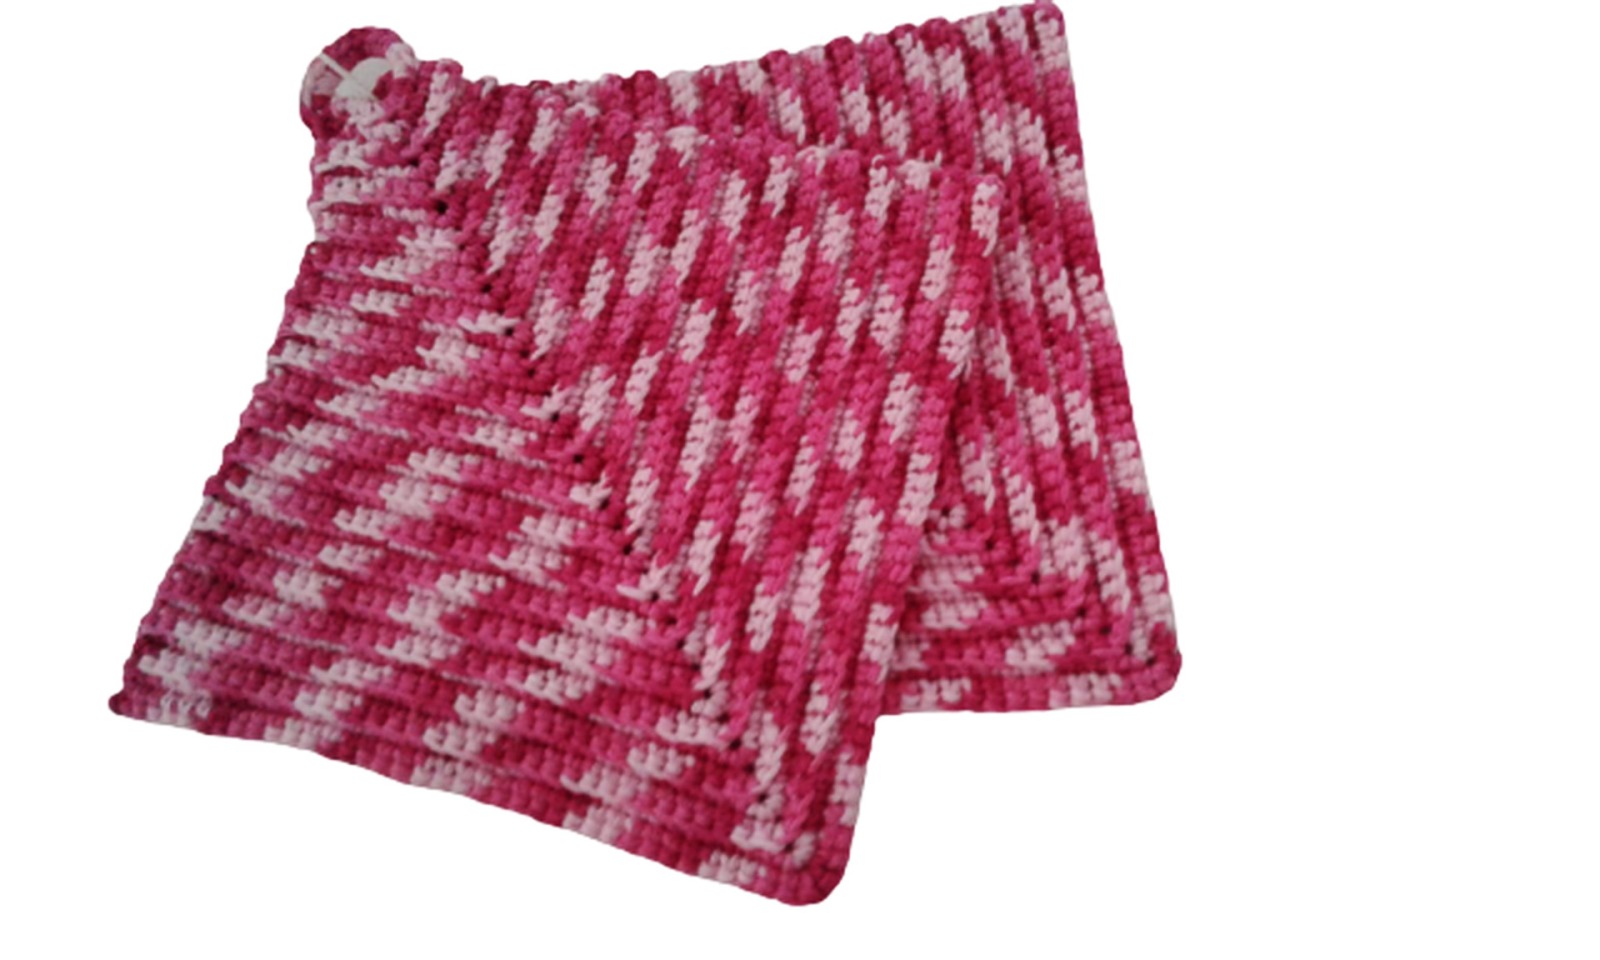 Topflappen klassicher Stil ca 19 x 19 cm - 100 Baumwolle in pink und natur